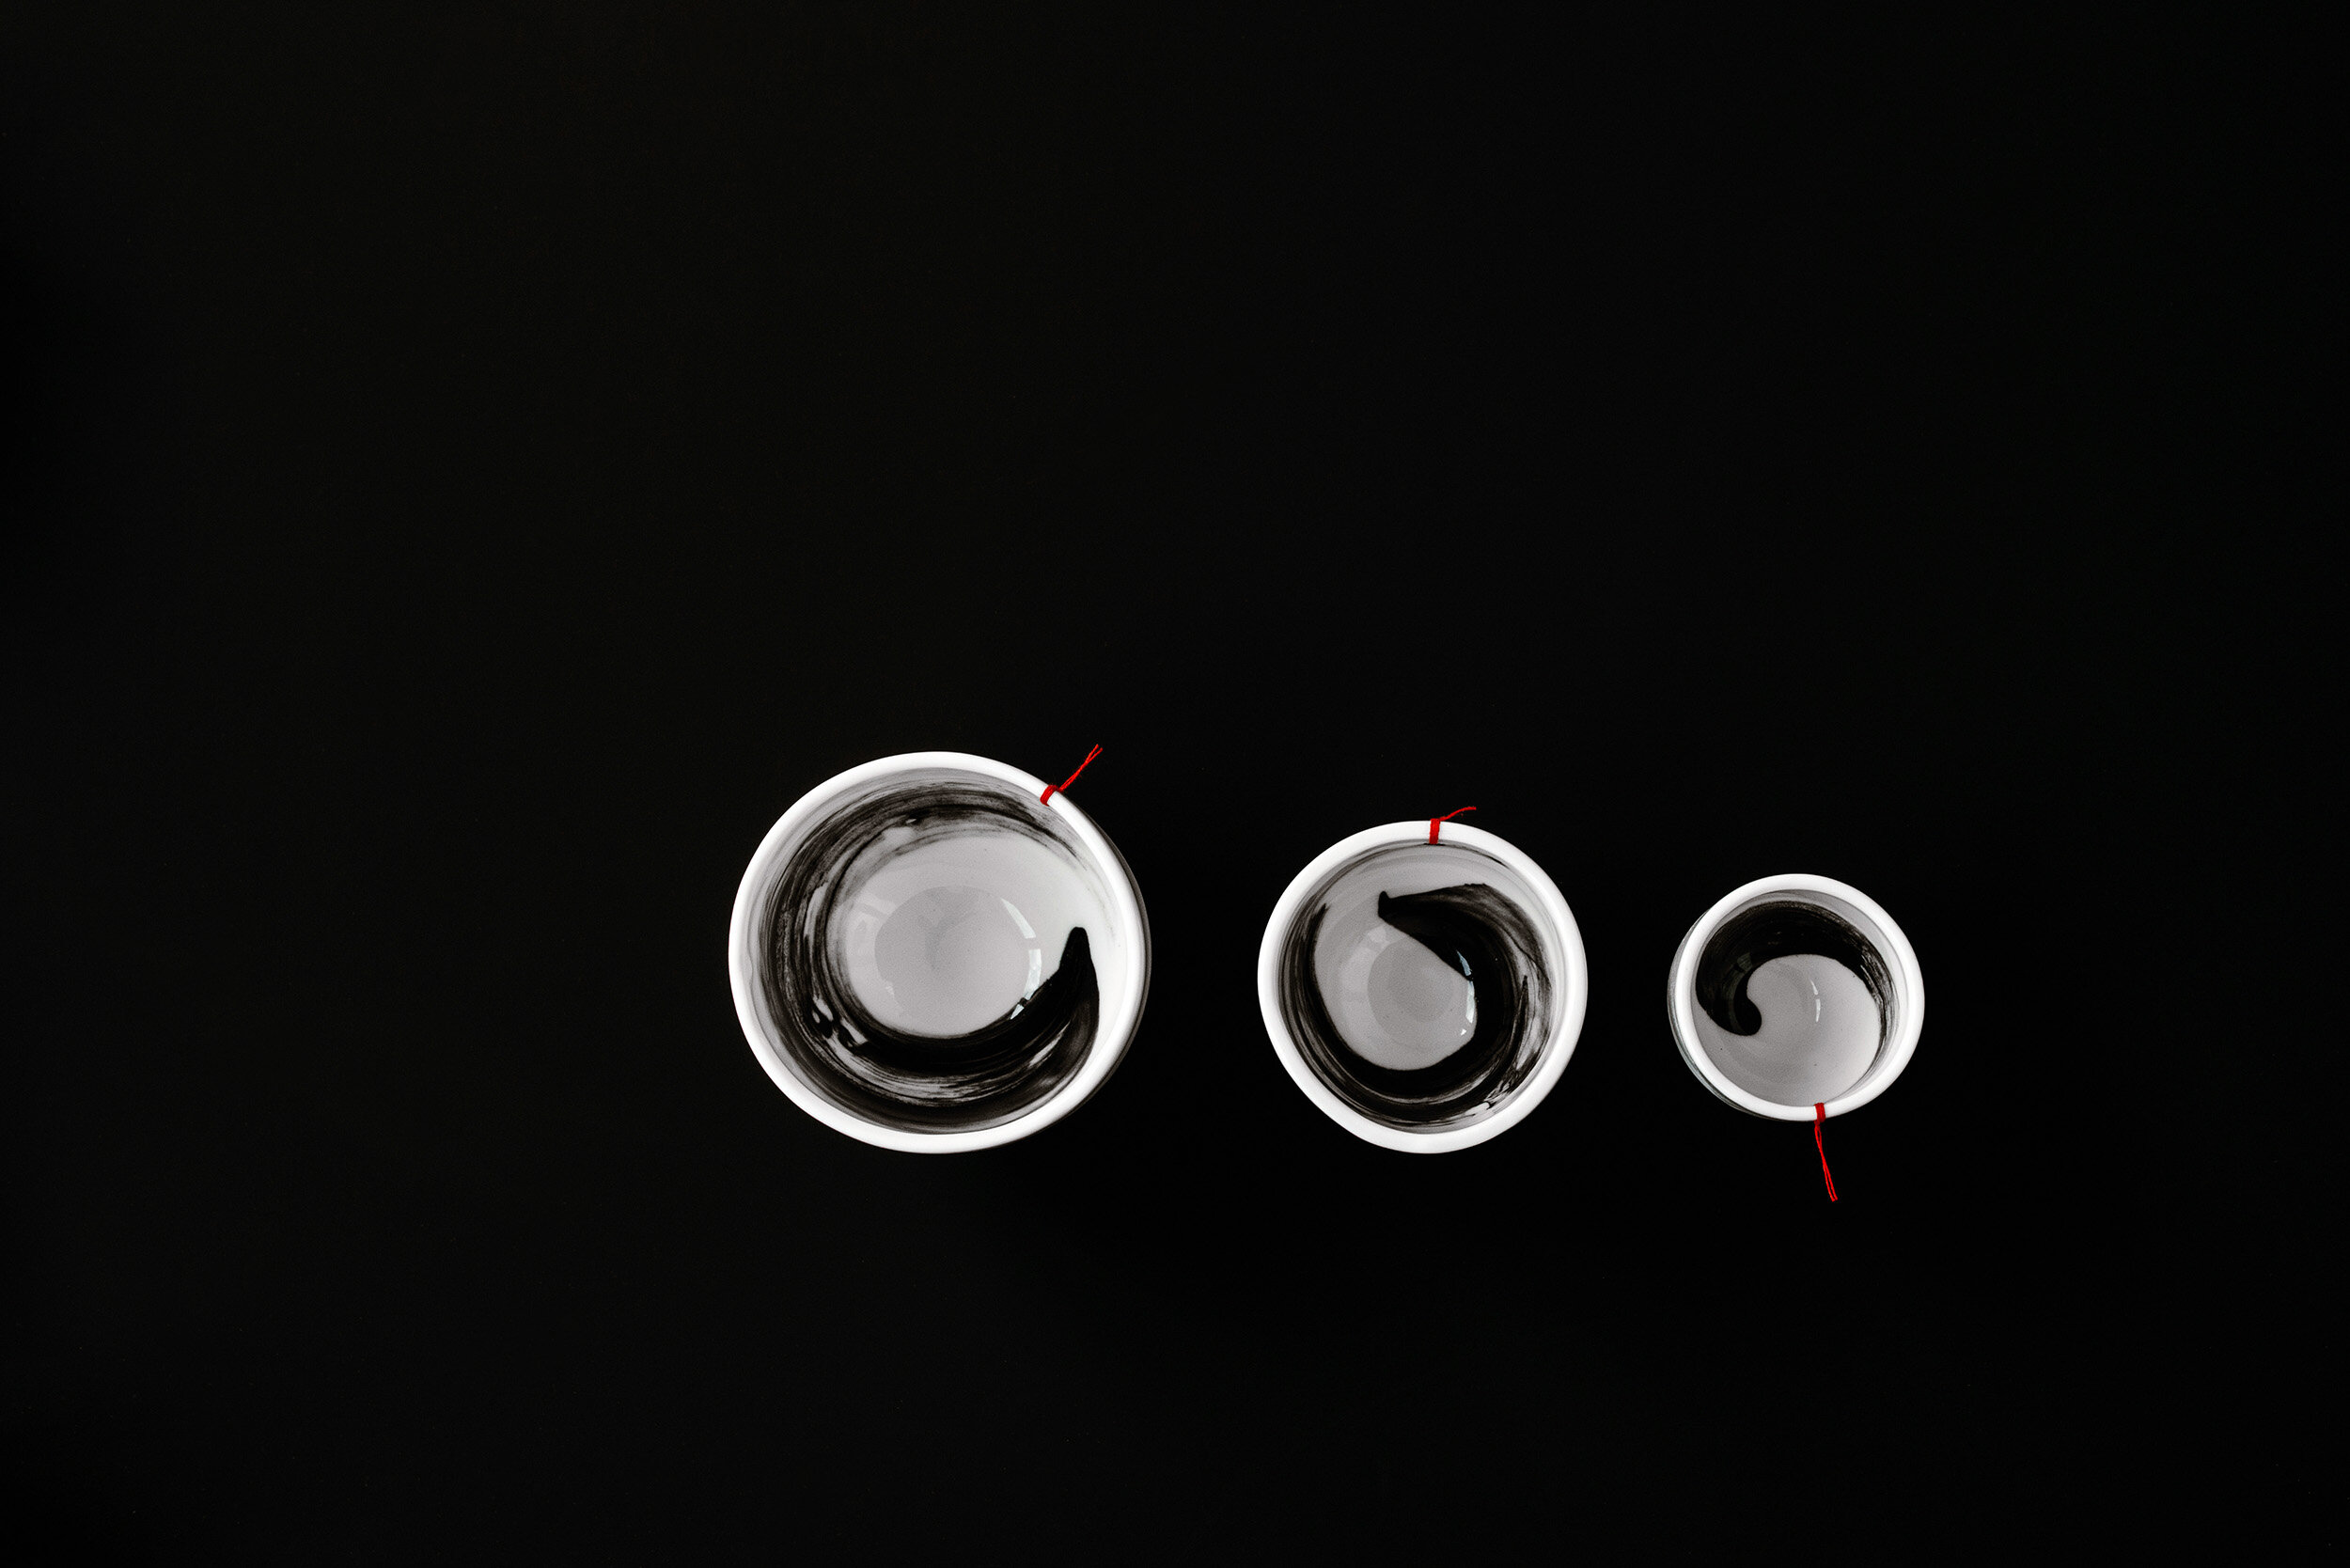 VON BROKK Kaffeetassen mit schwarzen Pinselschwung in XS, S und M 